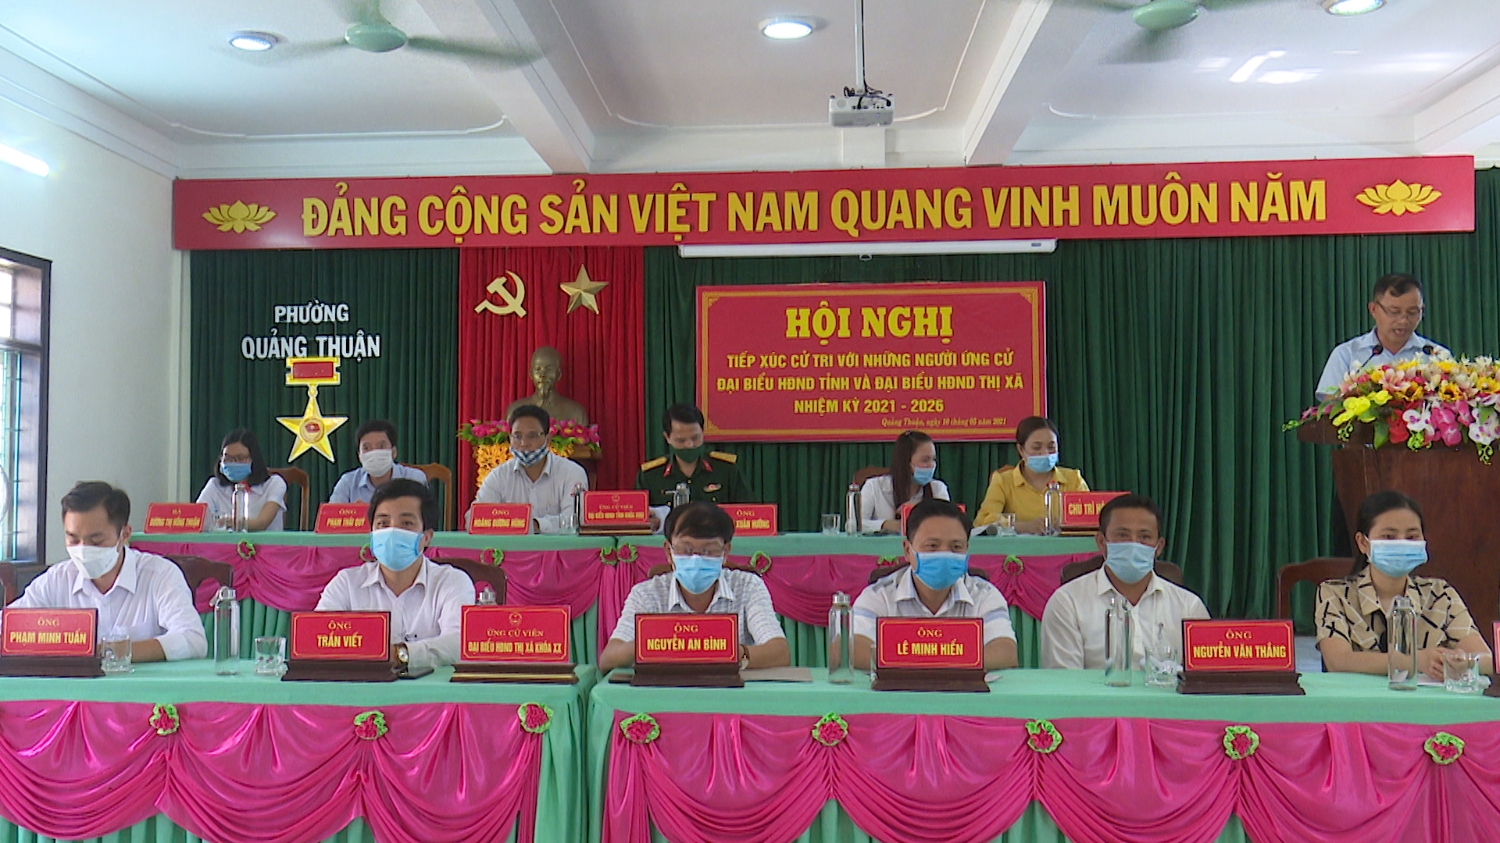 Các ứng cử viên HĐND tỉnh Quảng Bình và thị xã Ba Đồn tham gia vận động bầu cử tại phường Quảng Thuận